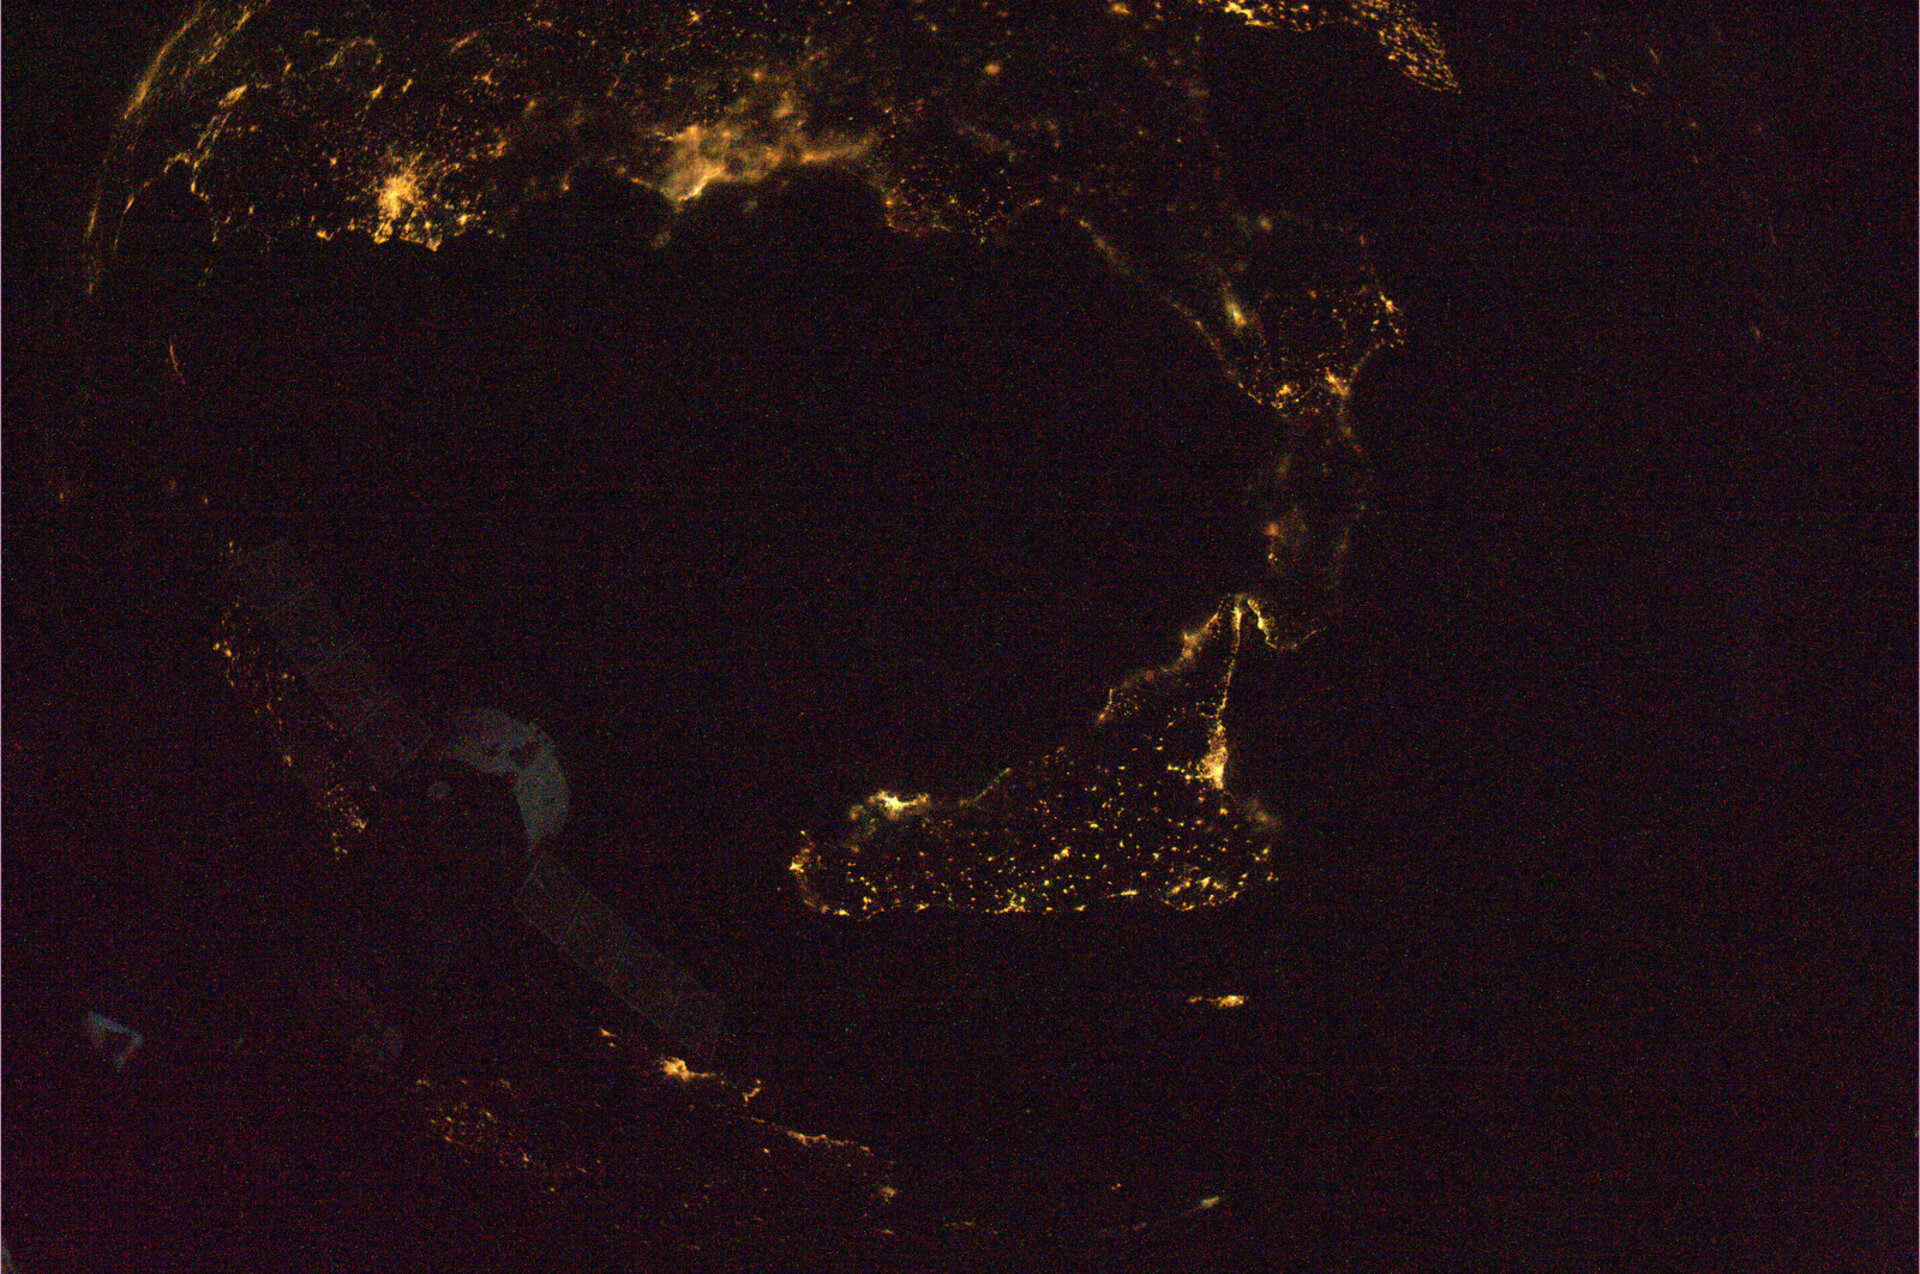 Calabria and Sicily at night